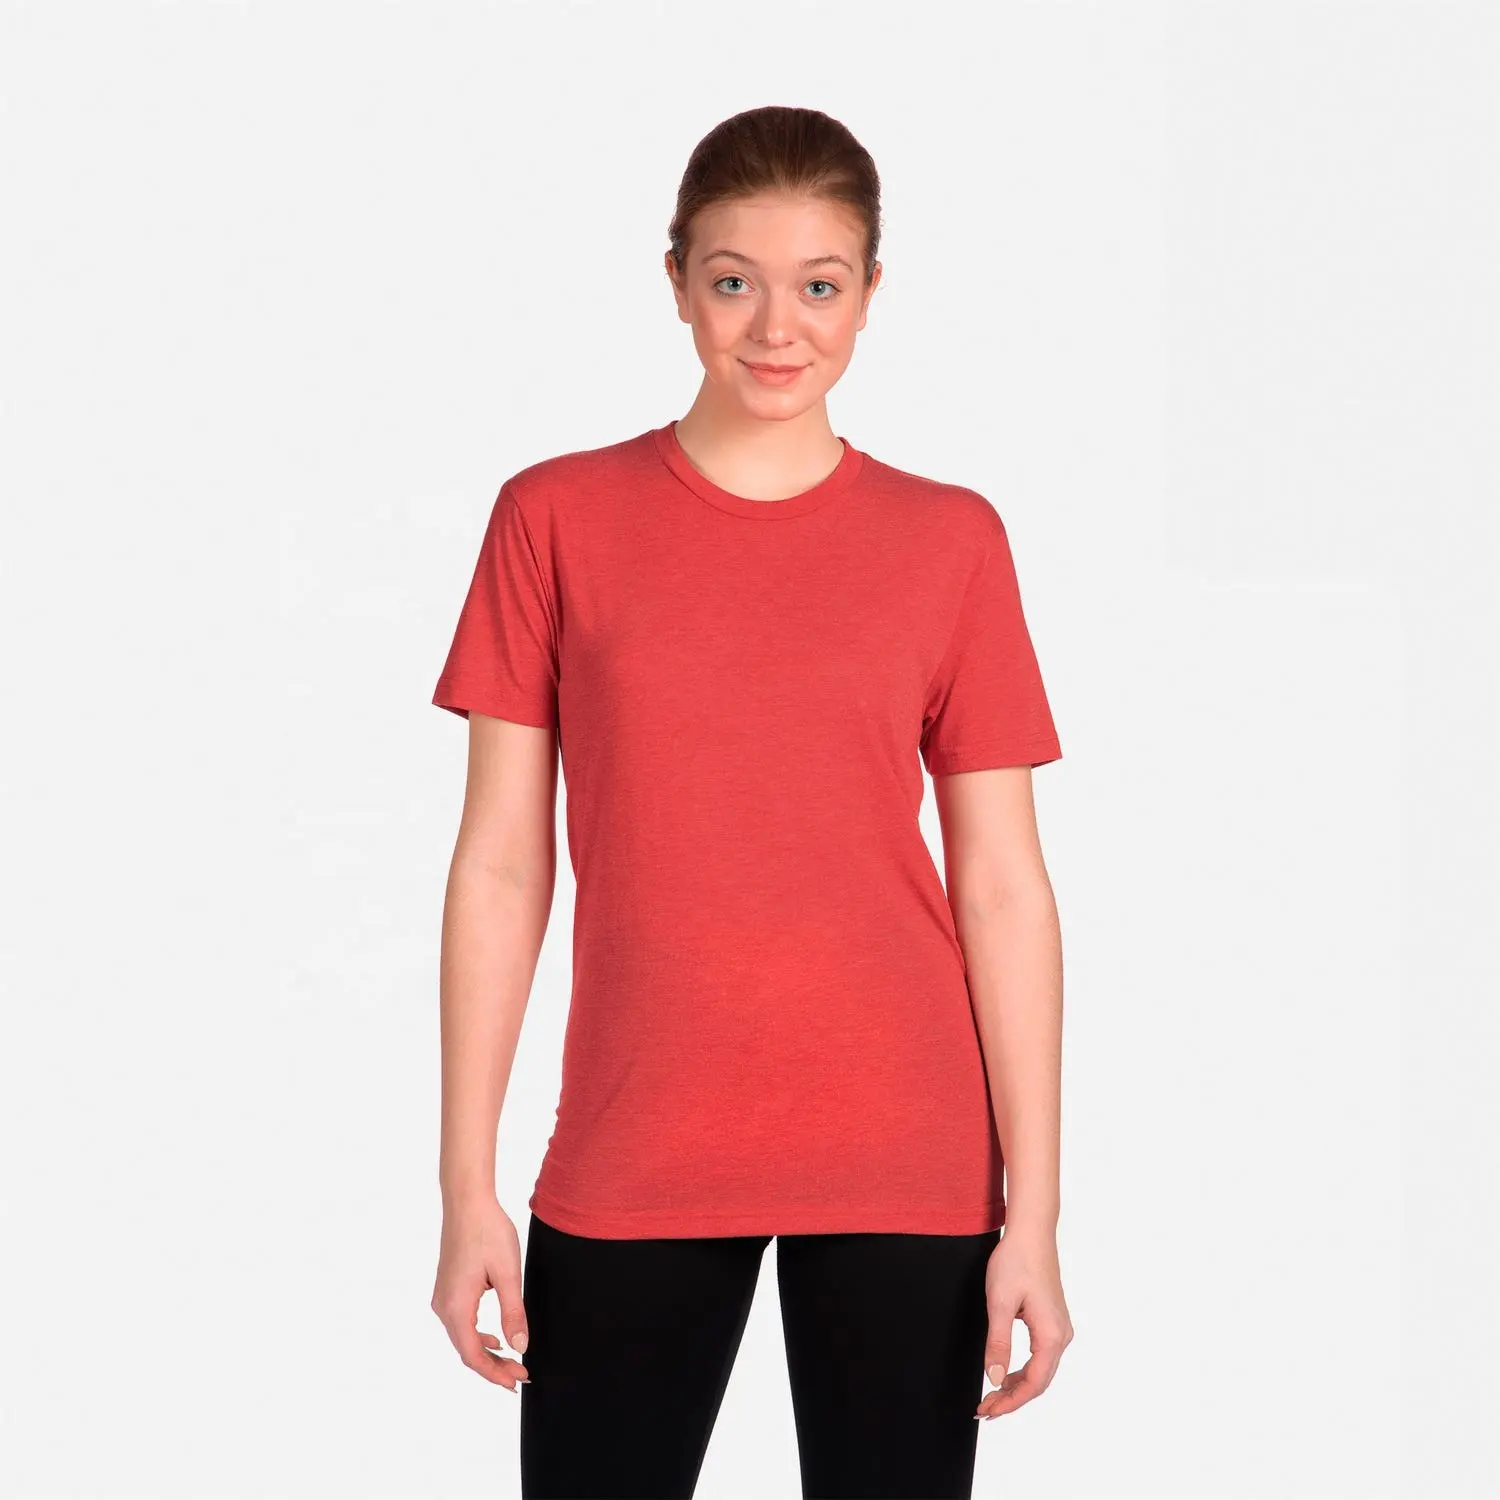 T-shirt rouge en trois mélanges unisexe personnalisé pour femmes Triblend Polyester Rayon Cotton Tri Blend T Shirt Poly Blank Breathable Tri-blend Tee